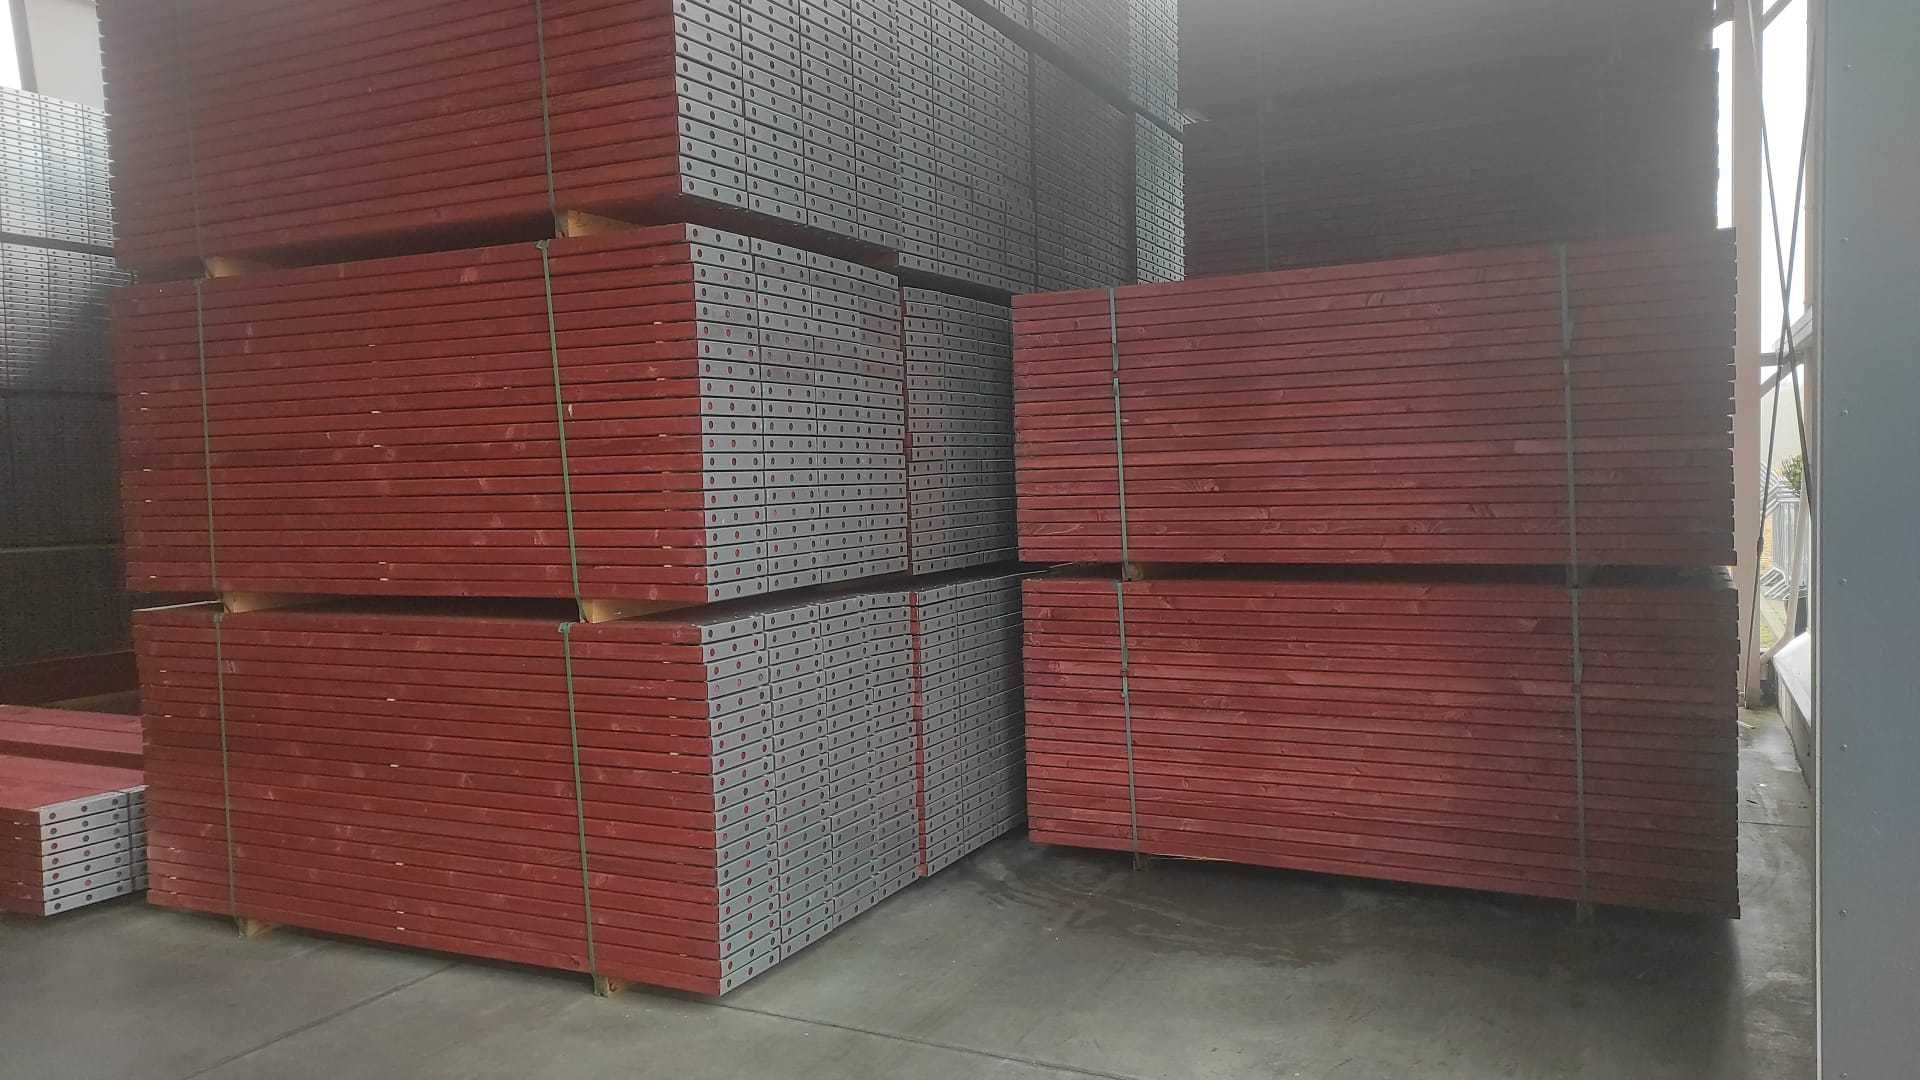 Rusztowania Ramowe/Fasadowe - zestaw pow. rob. 330 m2 / wys. rob. 10m